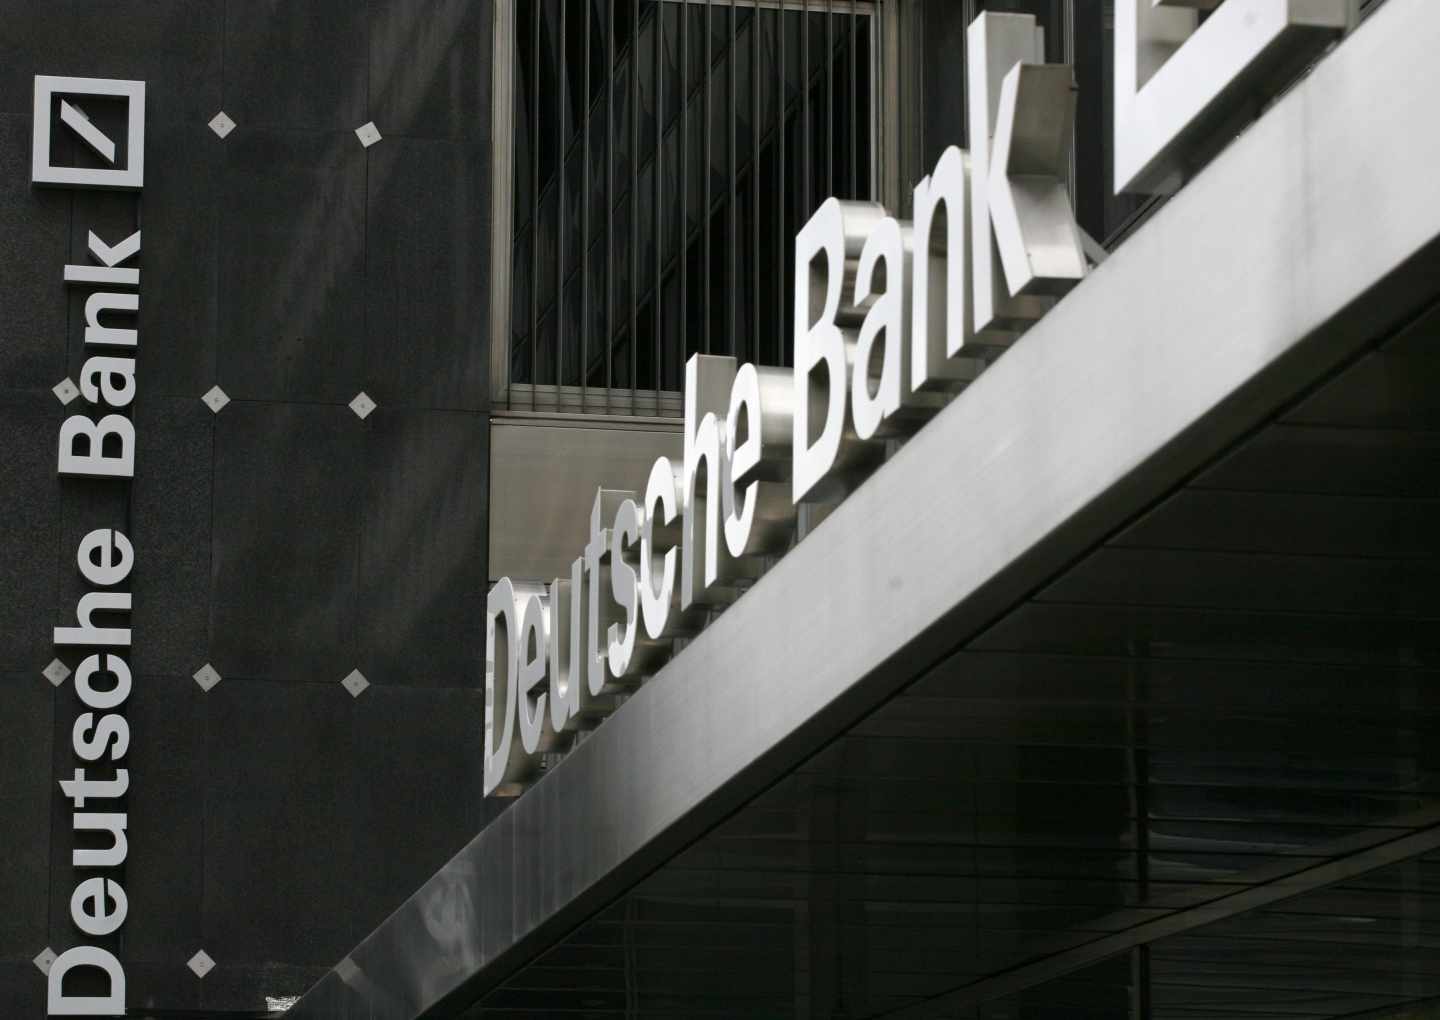 Oficina de Deutsche Bank.